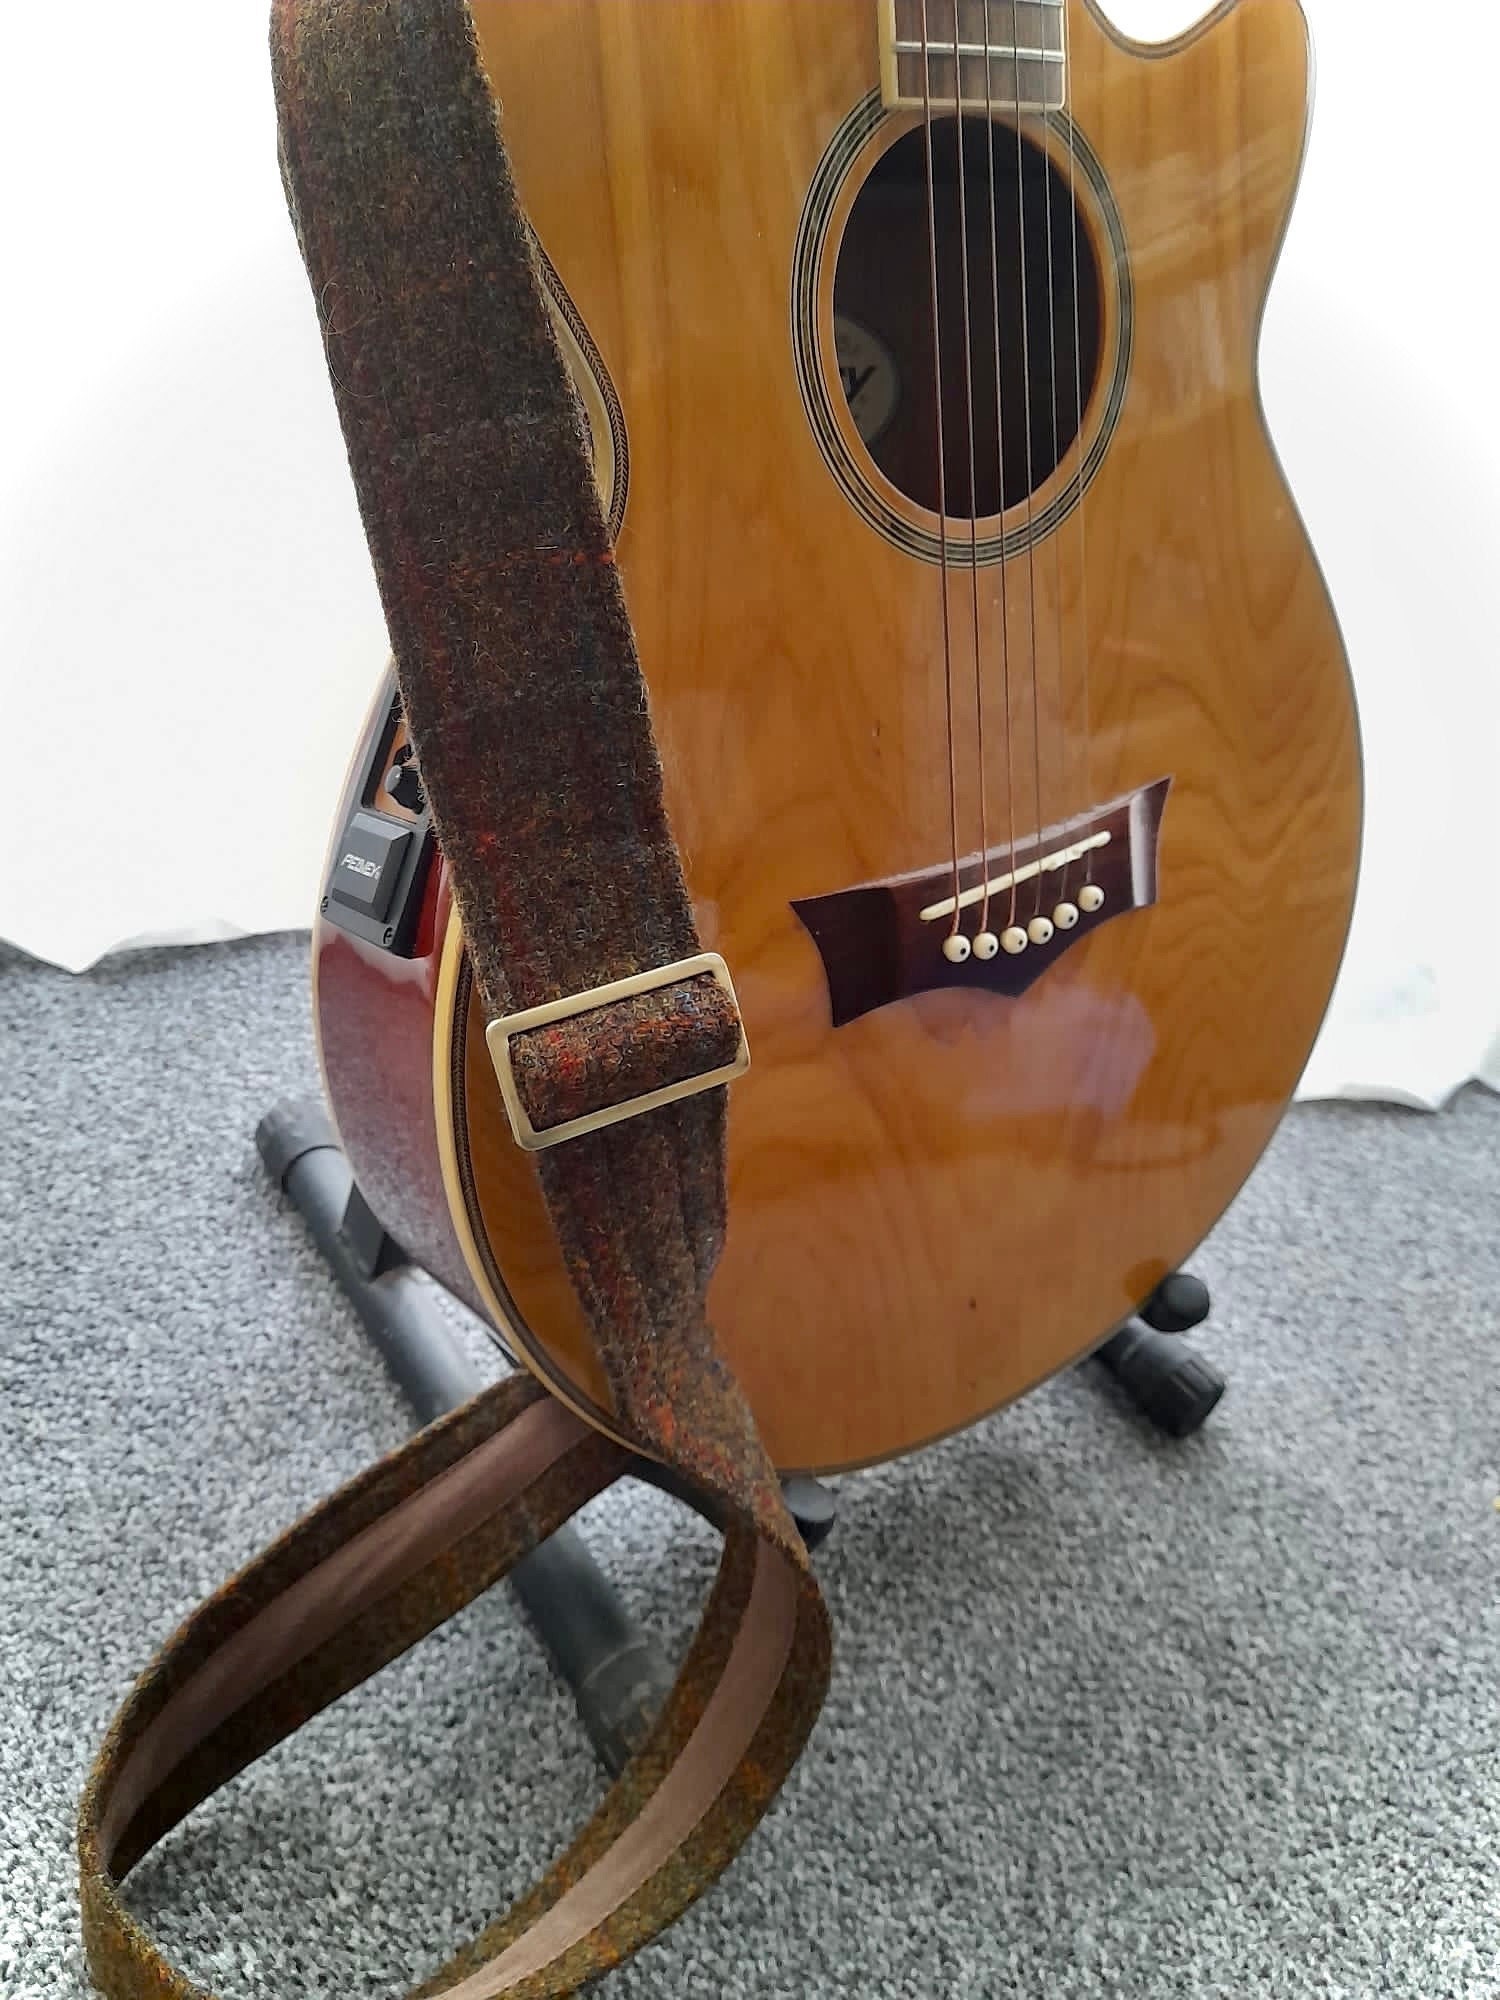 Fender - Sangle guitare - Noir, jaune et rouge - Tote bag - Supports  Customisation - Customisation